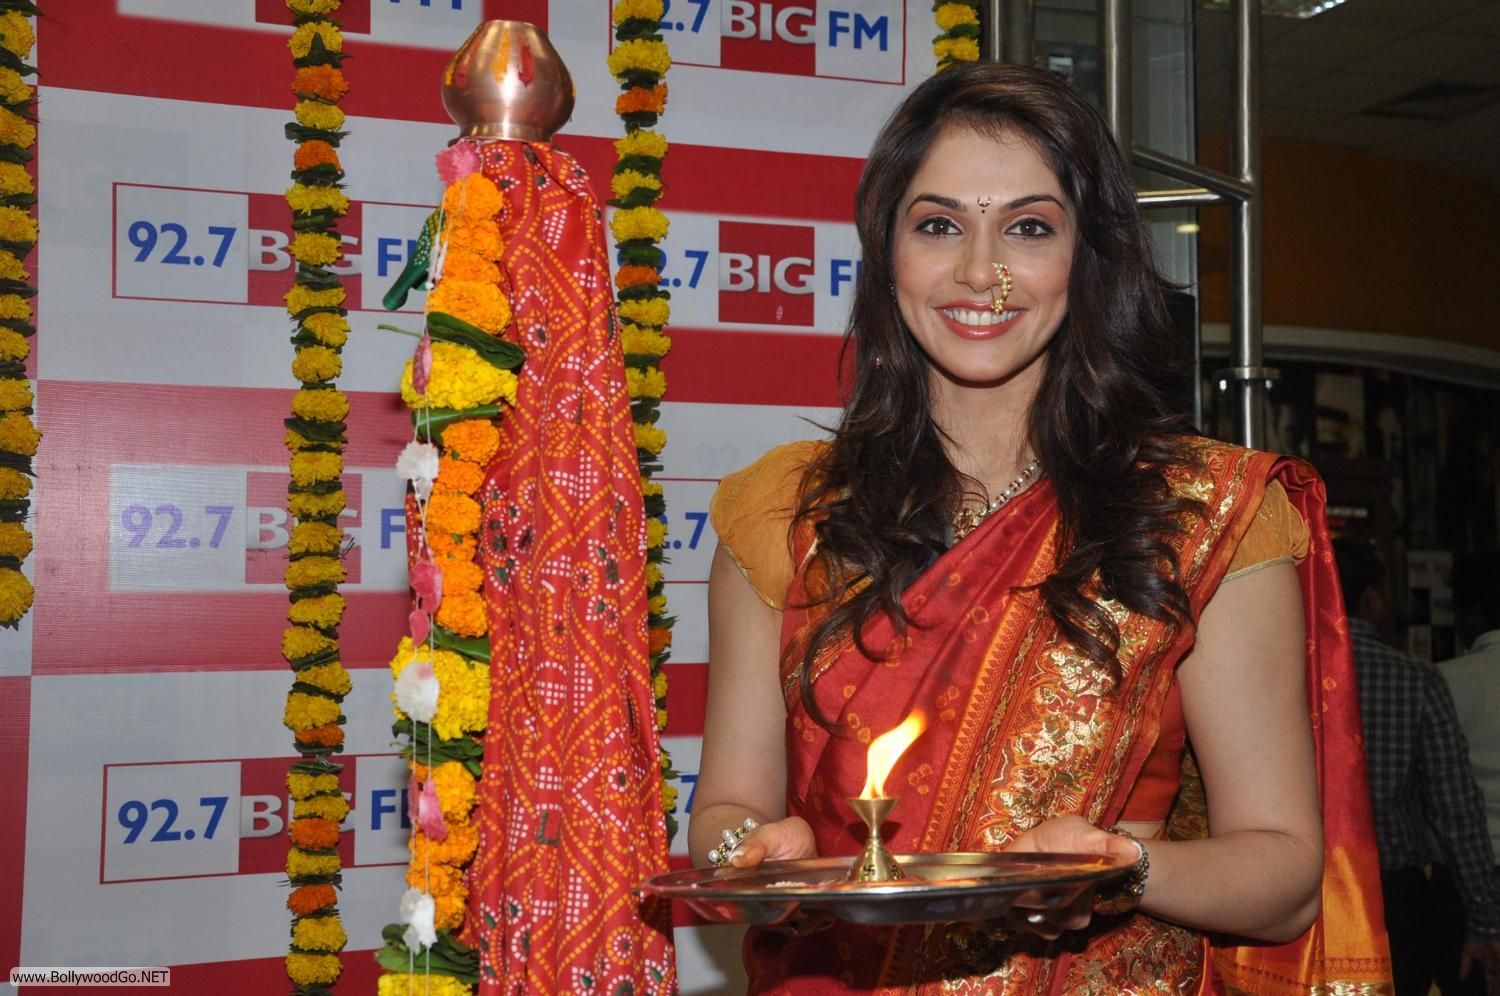 Isha Koppikar at Big FM Studio in Mumbai - BollywoodGo.Net